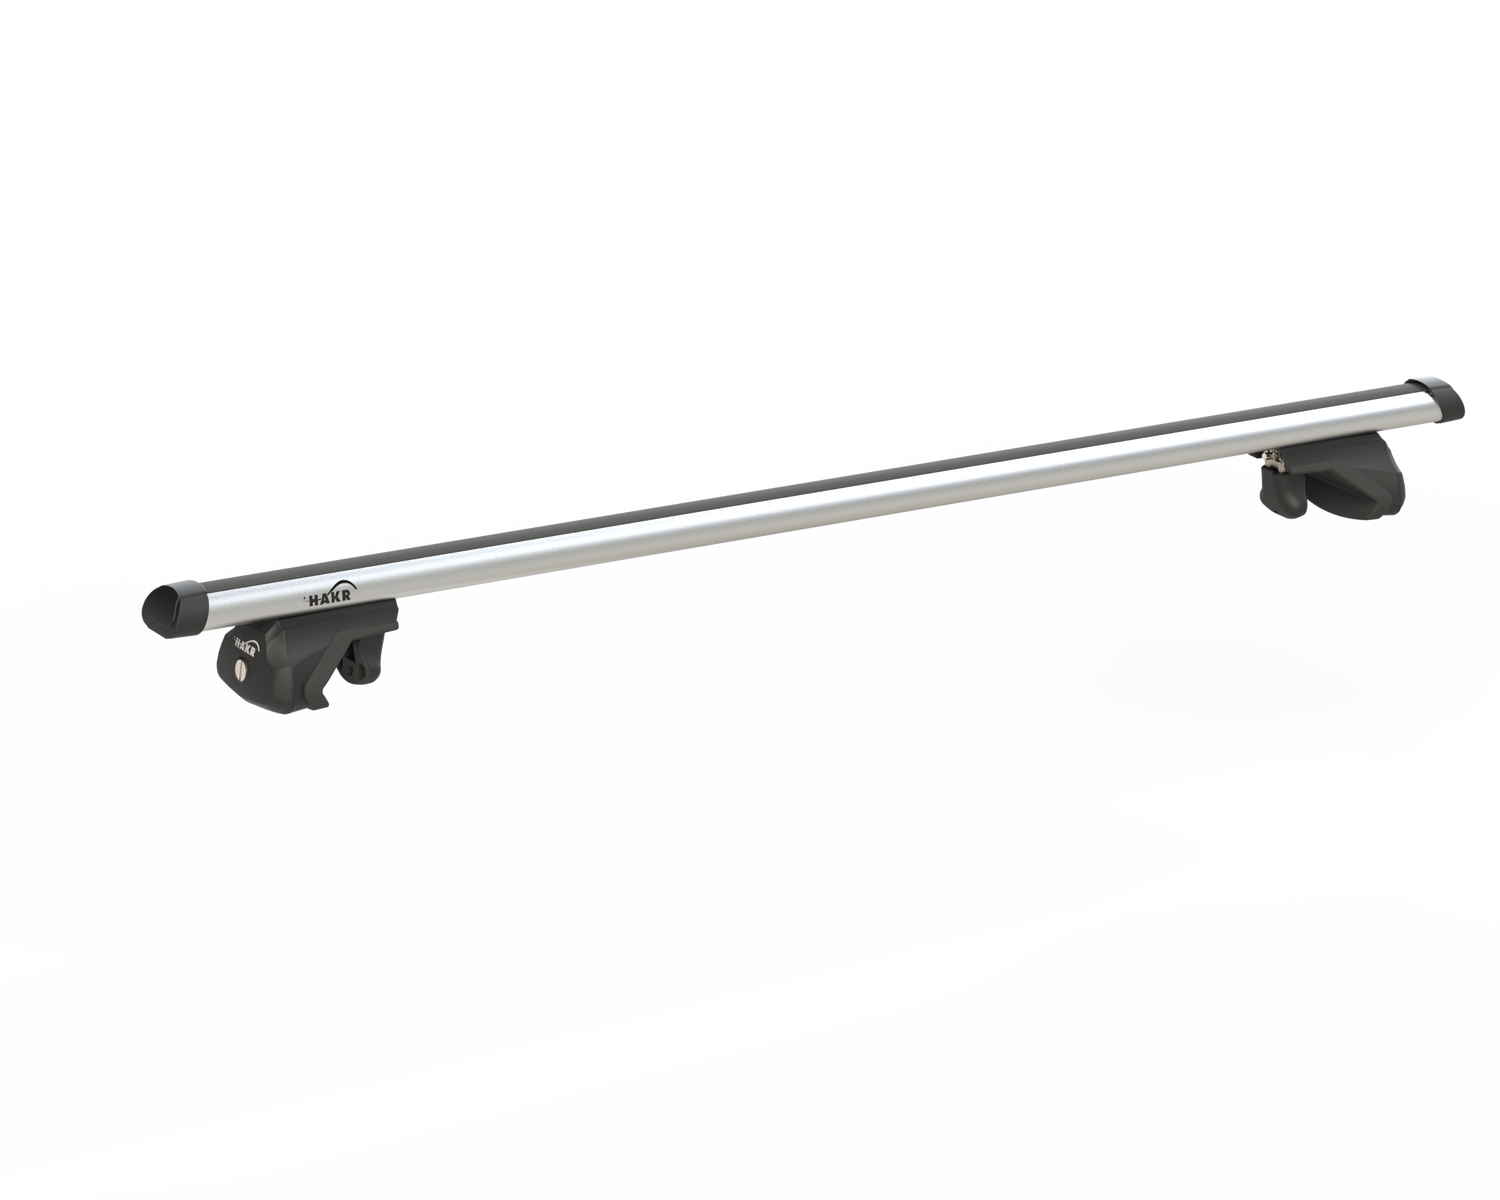 Strešný nosič OPEL INSIGNIA 5dv combi s integrovanými pozdĺžnikmi, Alu tyč